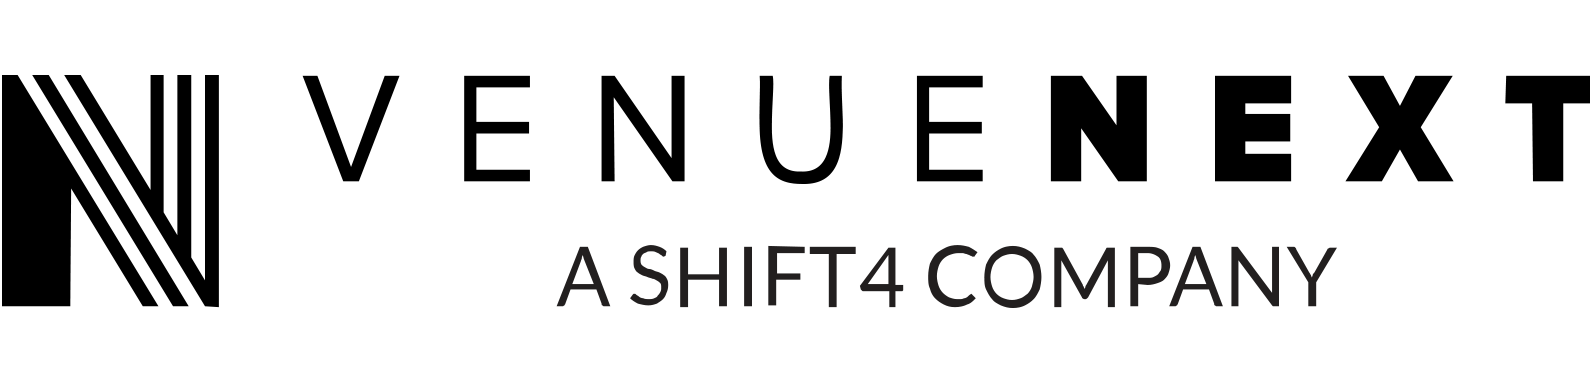 Venue Next Logo